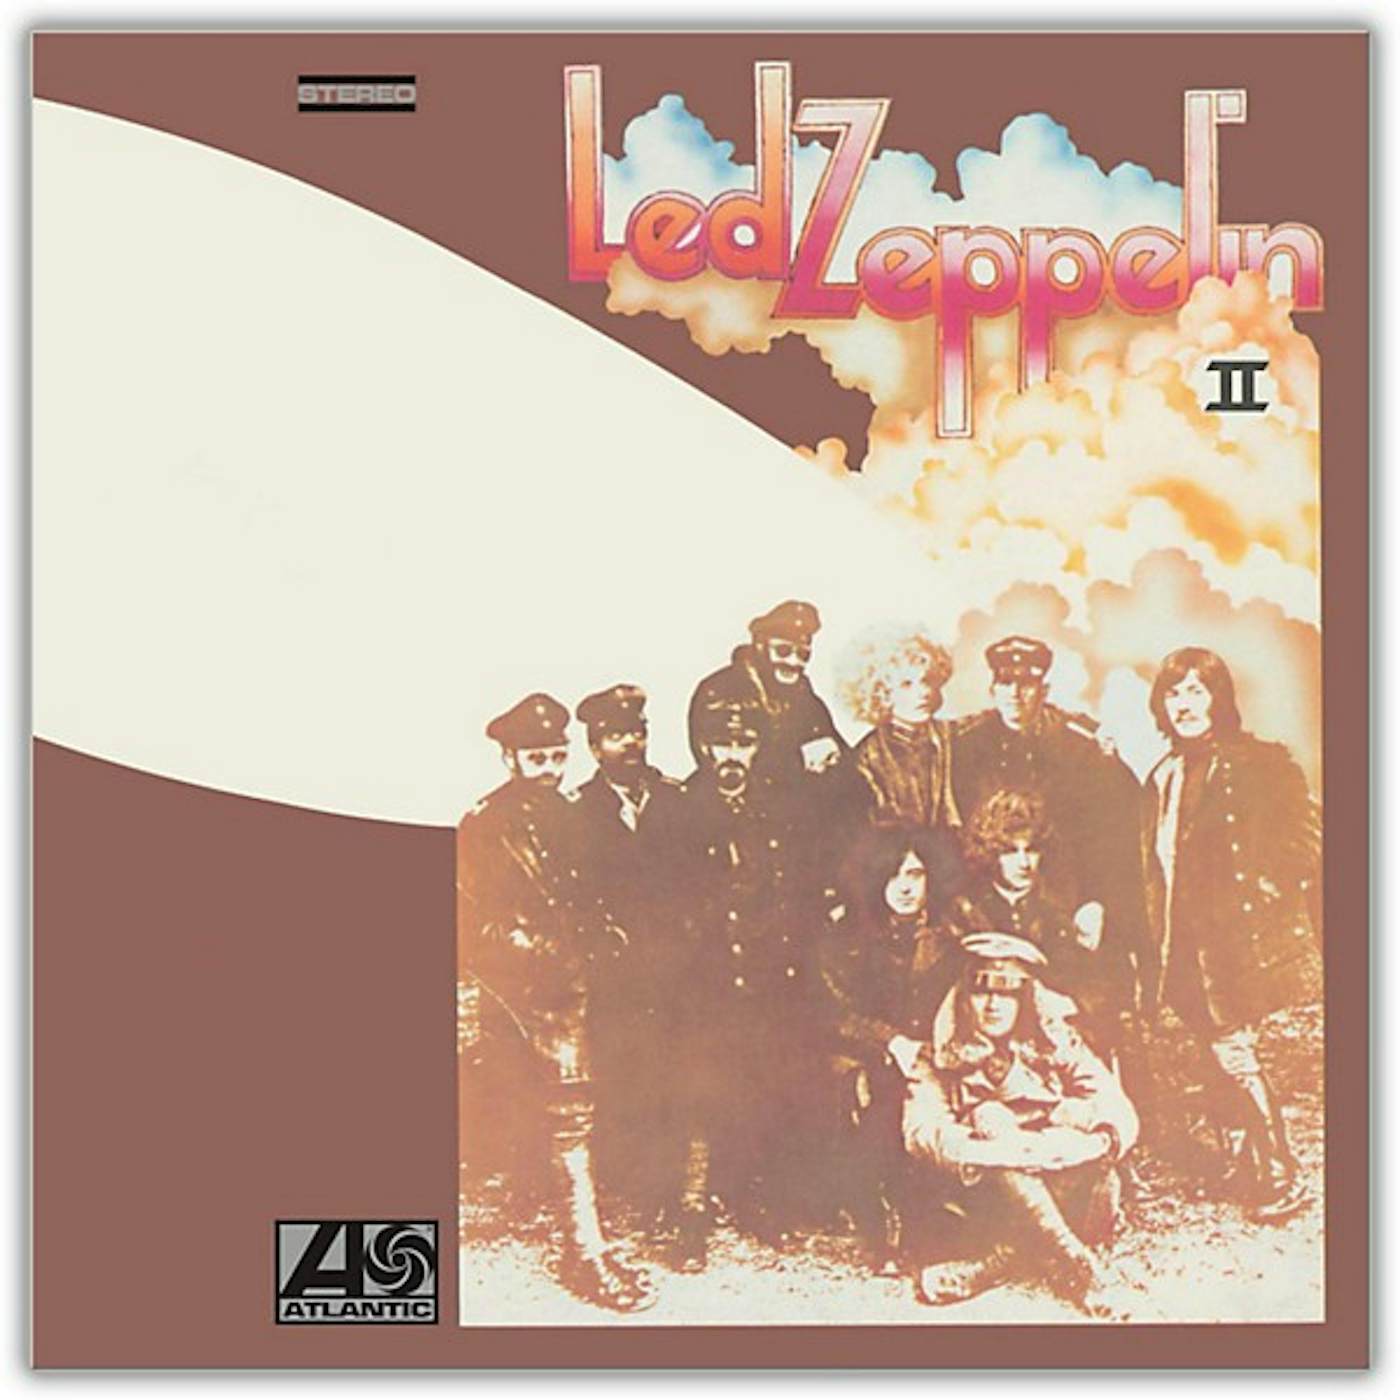  Led Zeppelin II (180G/REMASTERED) Vinyl Record